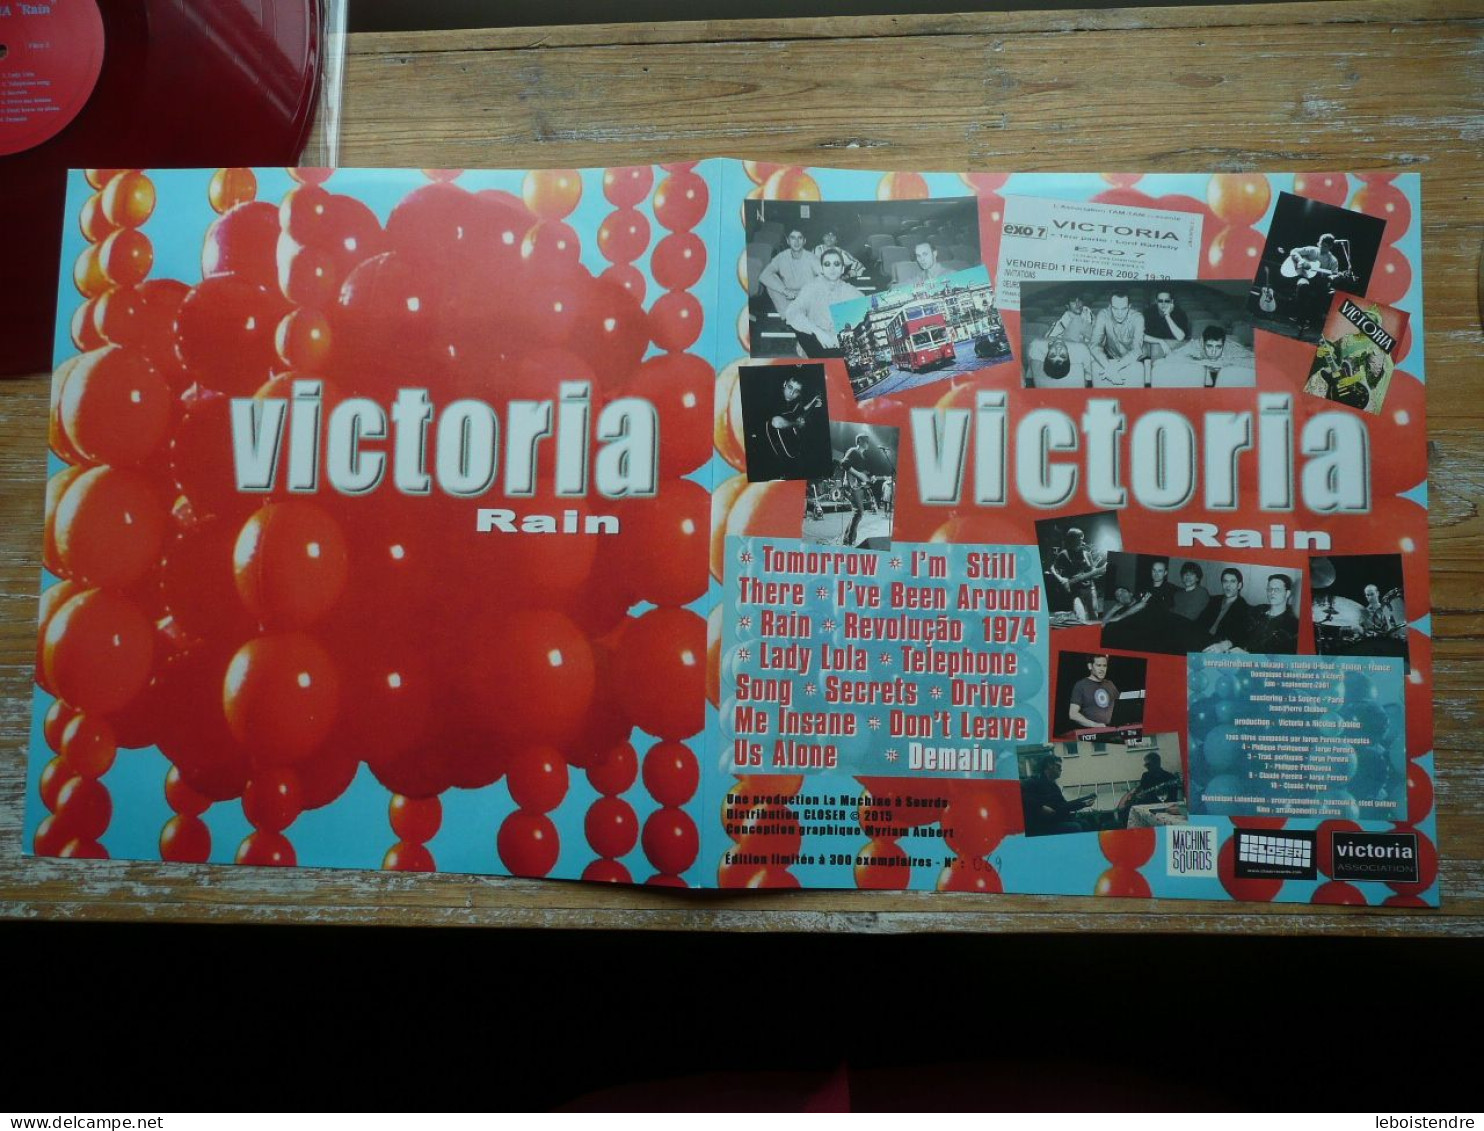 RARE 33 T LP VINYLE ROUGE RED + CD DANS POCHETTE VICTORIA RAIN EXEMPLAIRE NUMEROTE LA MACHINE A SOURDS NO PAYPAL !!! - Limited Editions